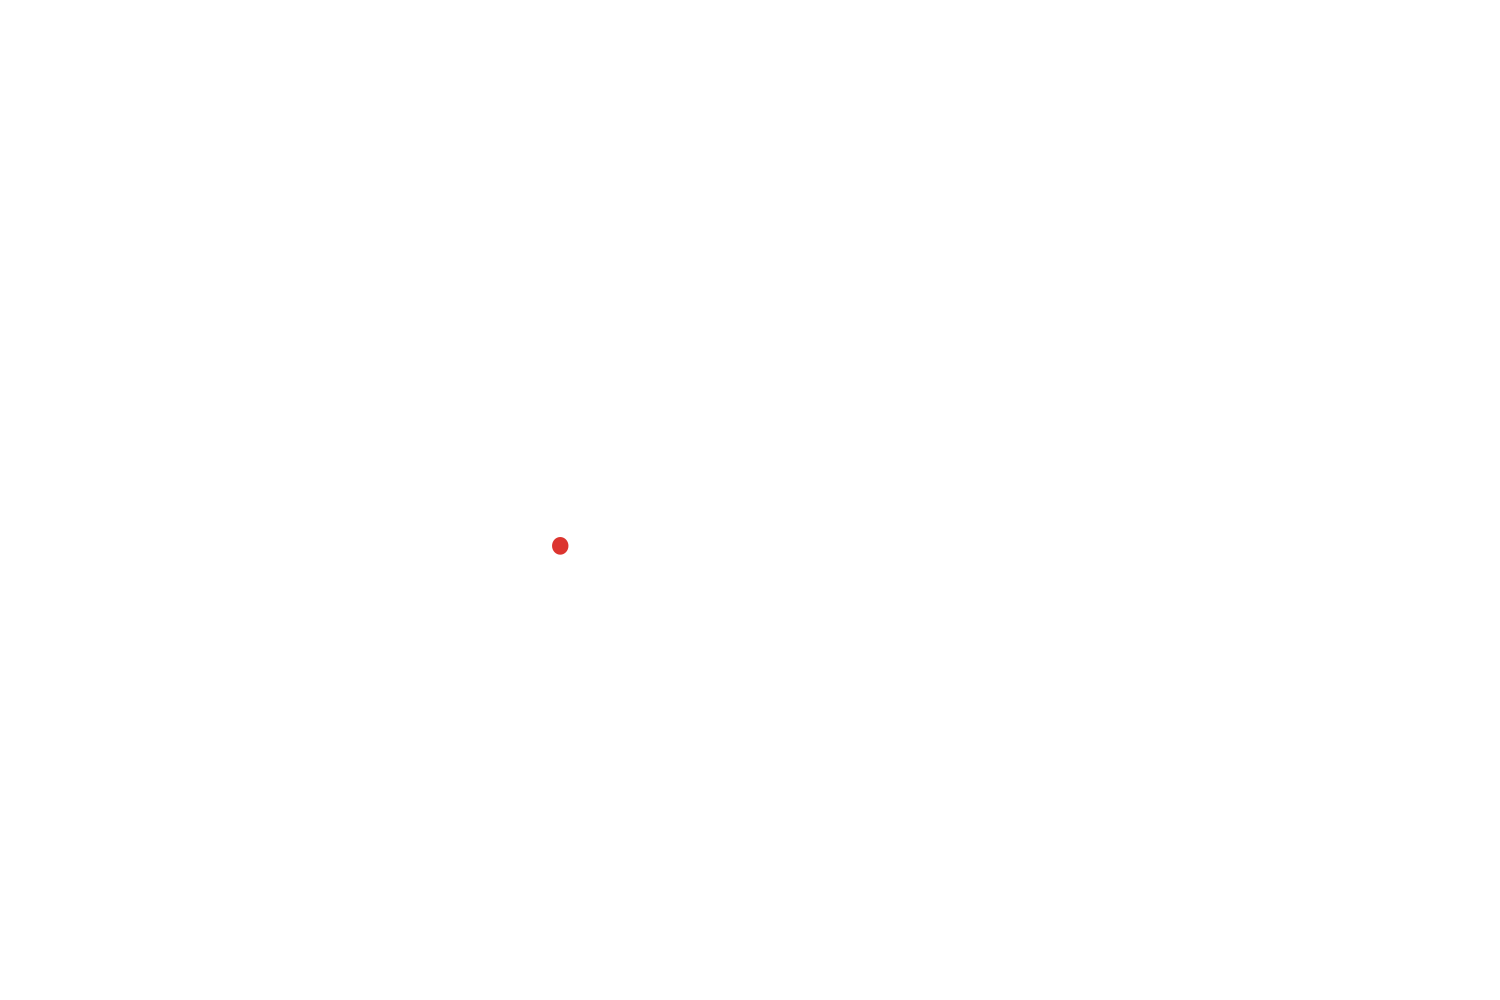 Off The Leash Press logo in white